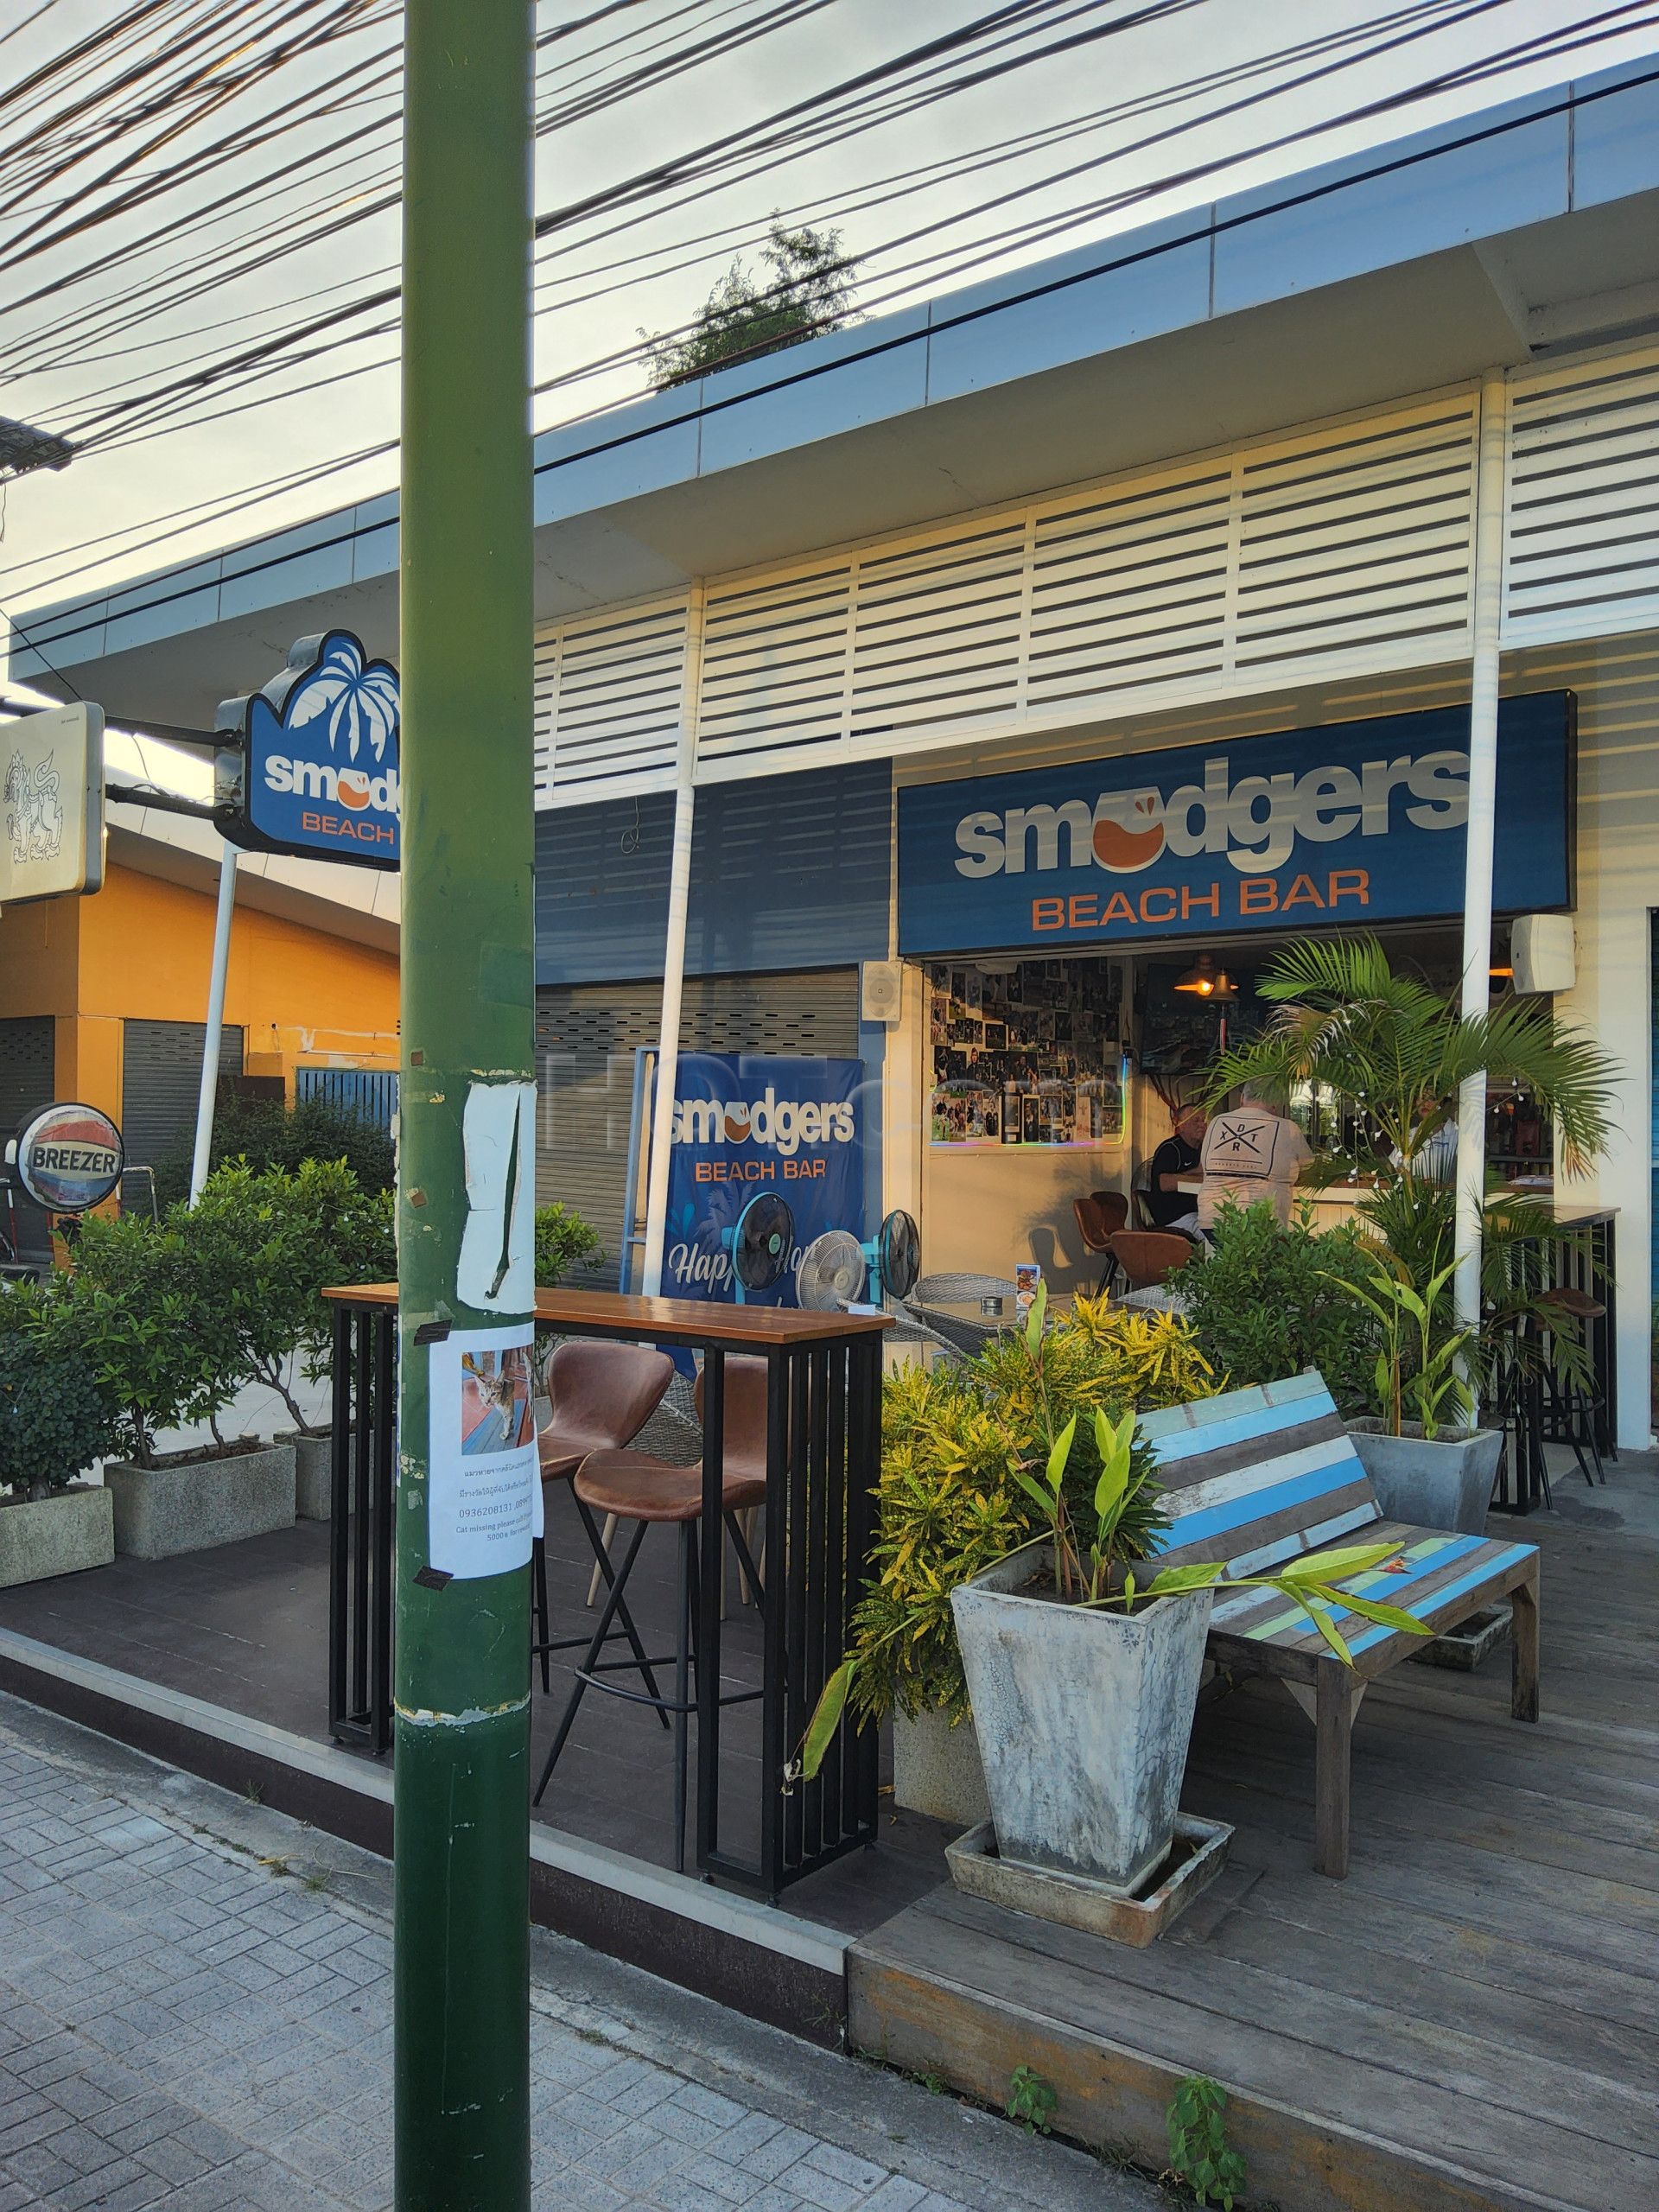 Ko Samui, Thailand Smudgers Beach Bar